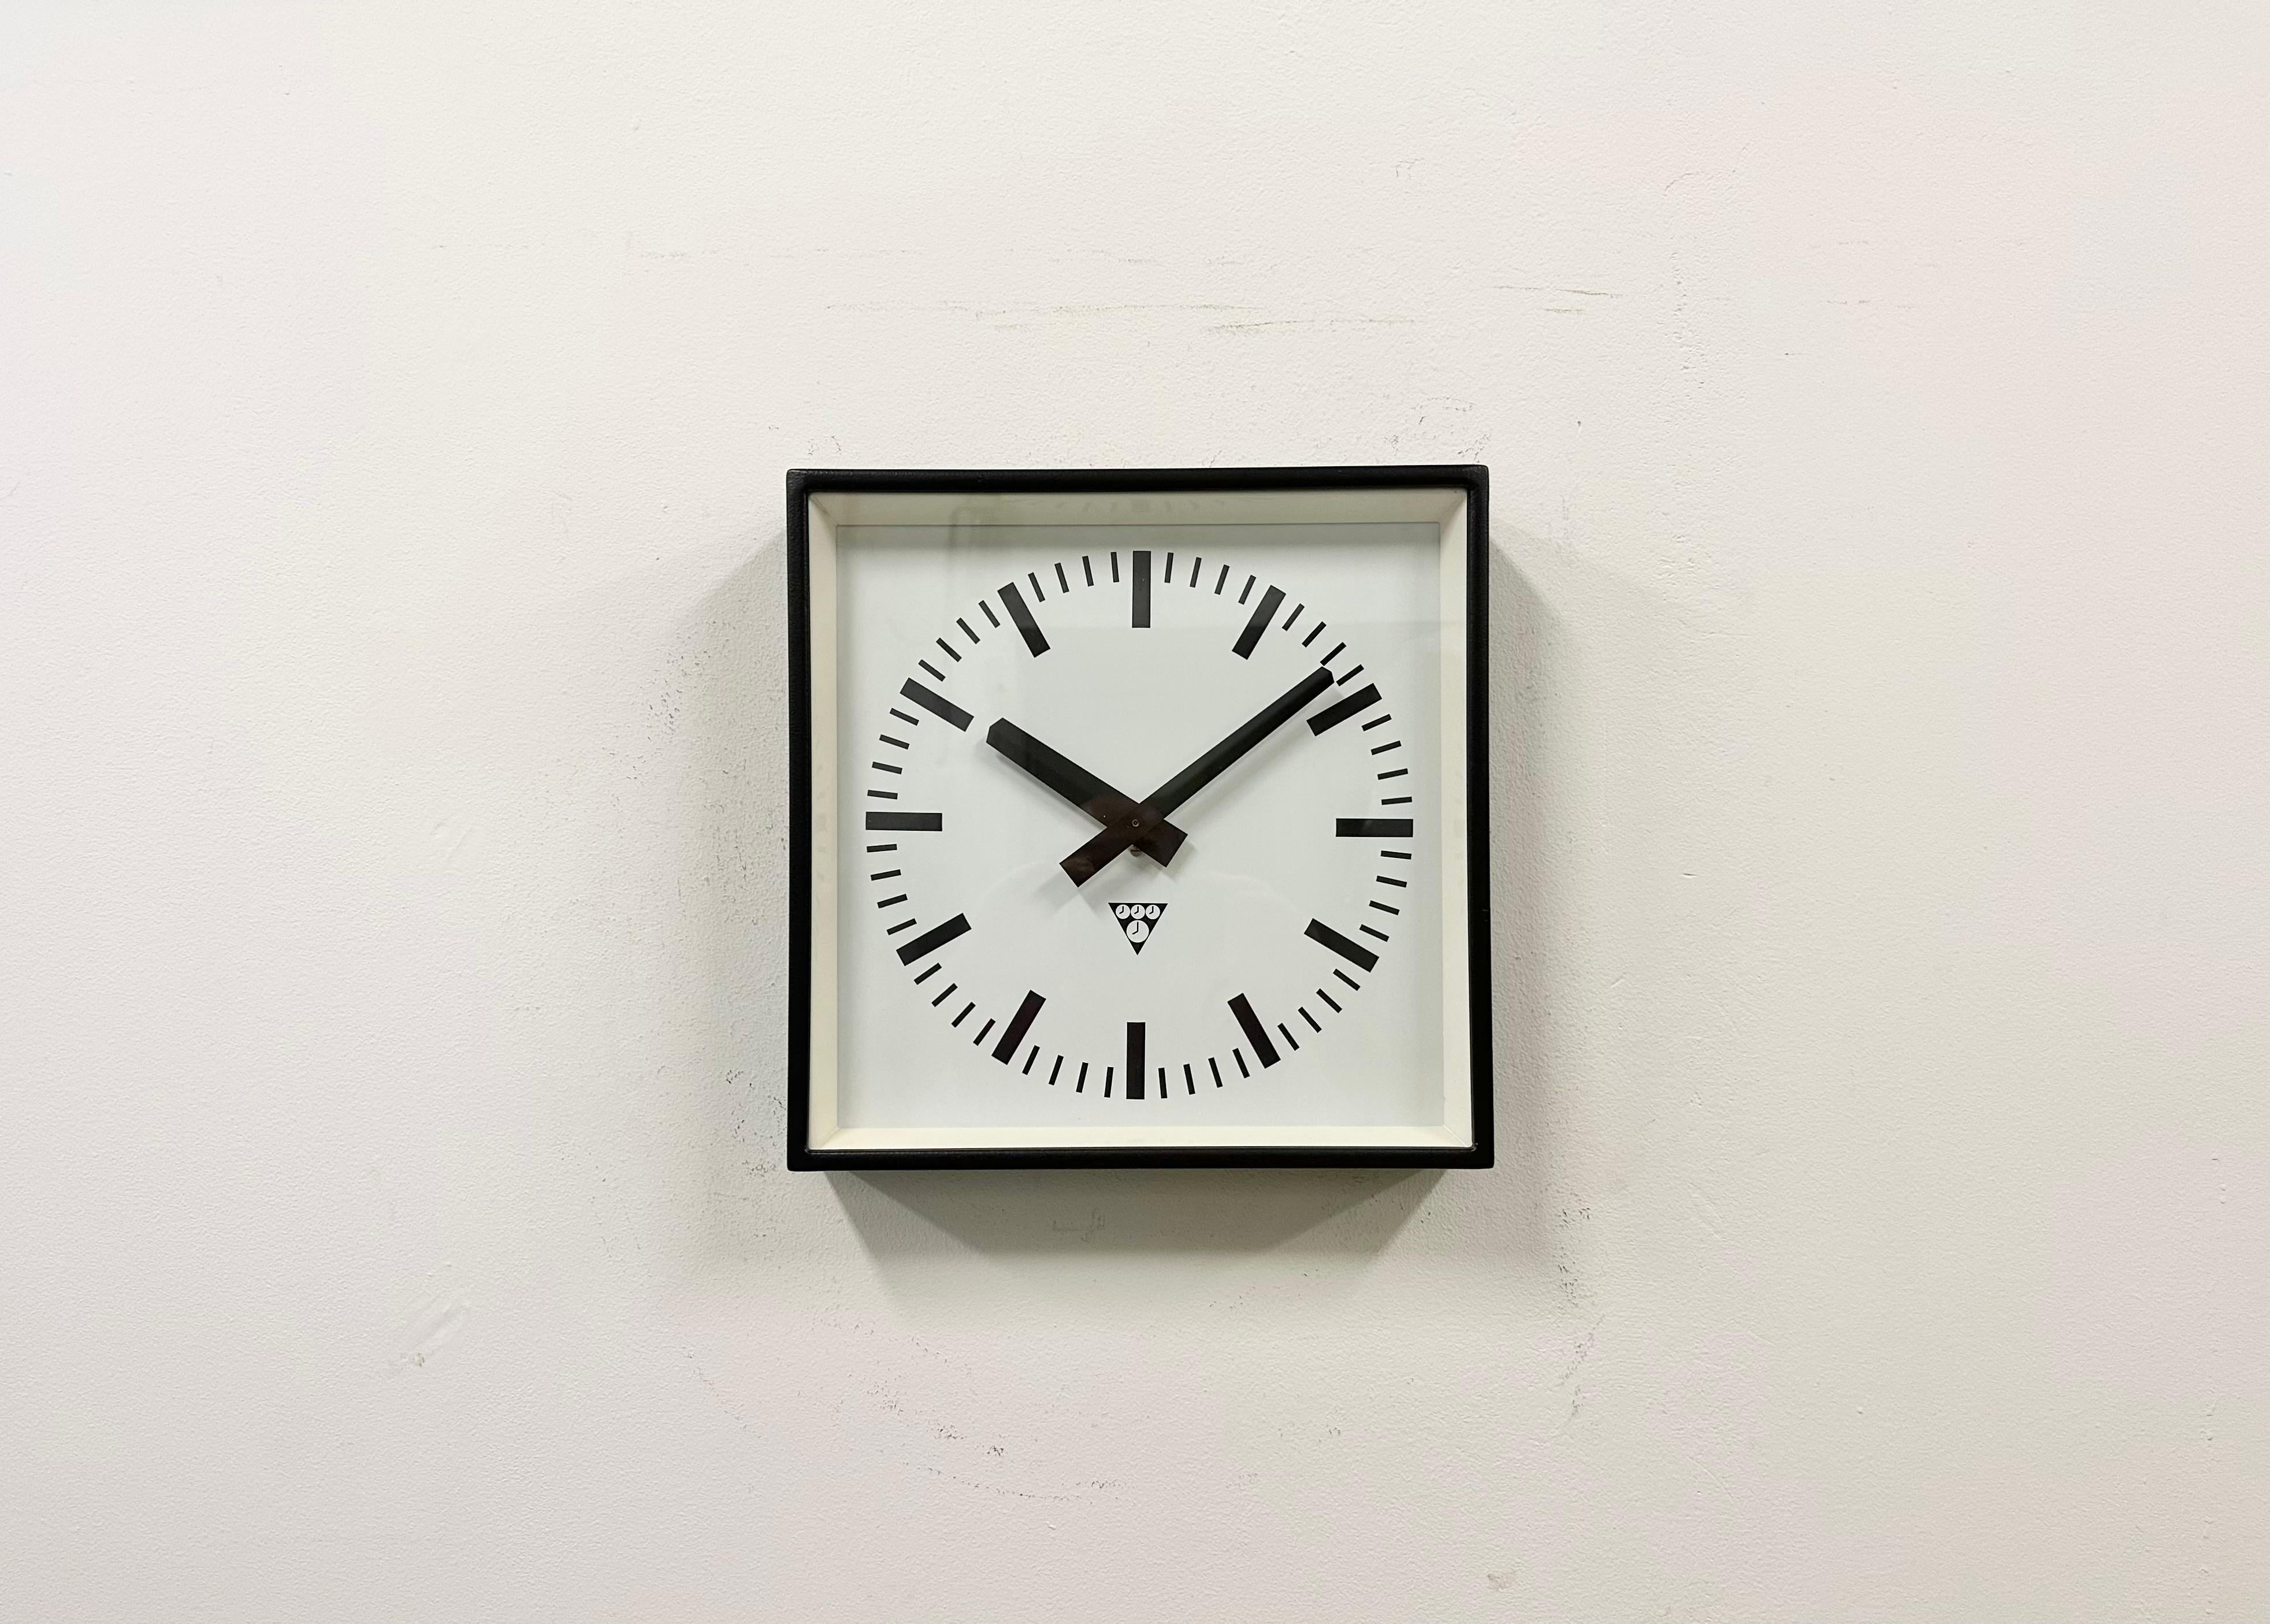 - Horloge murale conçue par Pragotron dans l'ancienne Tchécoslovaquie au cours des années 1970 et fabriquée jusque dans les années 1990.
- Utilisé dans les usines, les écoles et les gares. 
- Cadre métallique nouvellement peint en noir 
- Cadran et